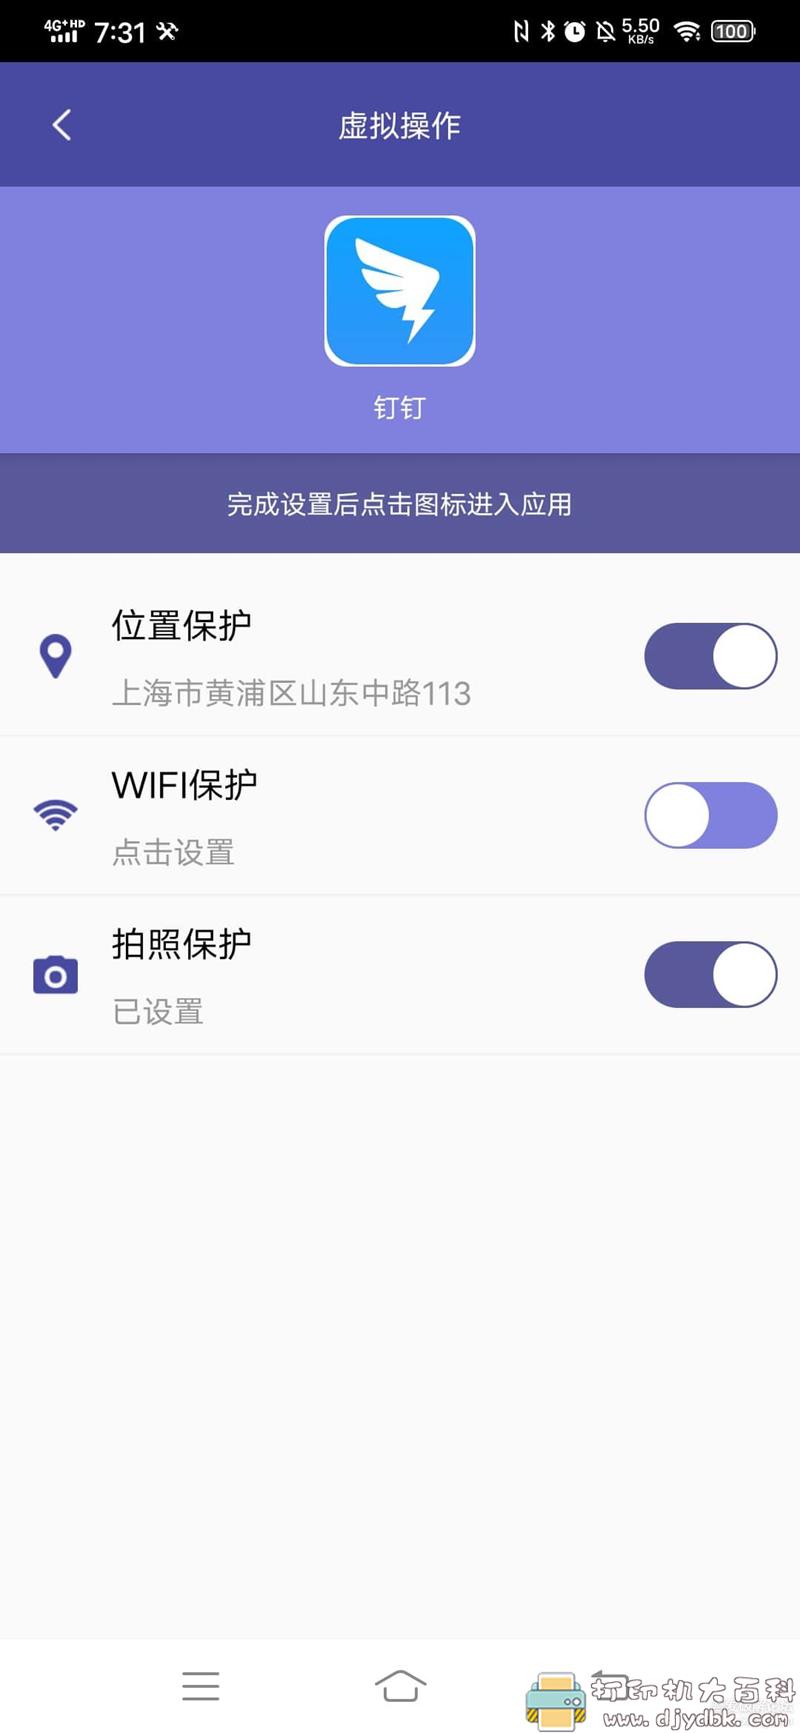 [Android]游世界4.0，支持钉钉定位wifi拍照打卡 配图 No.1